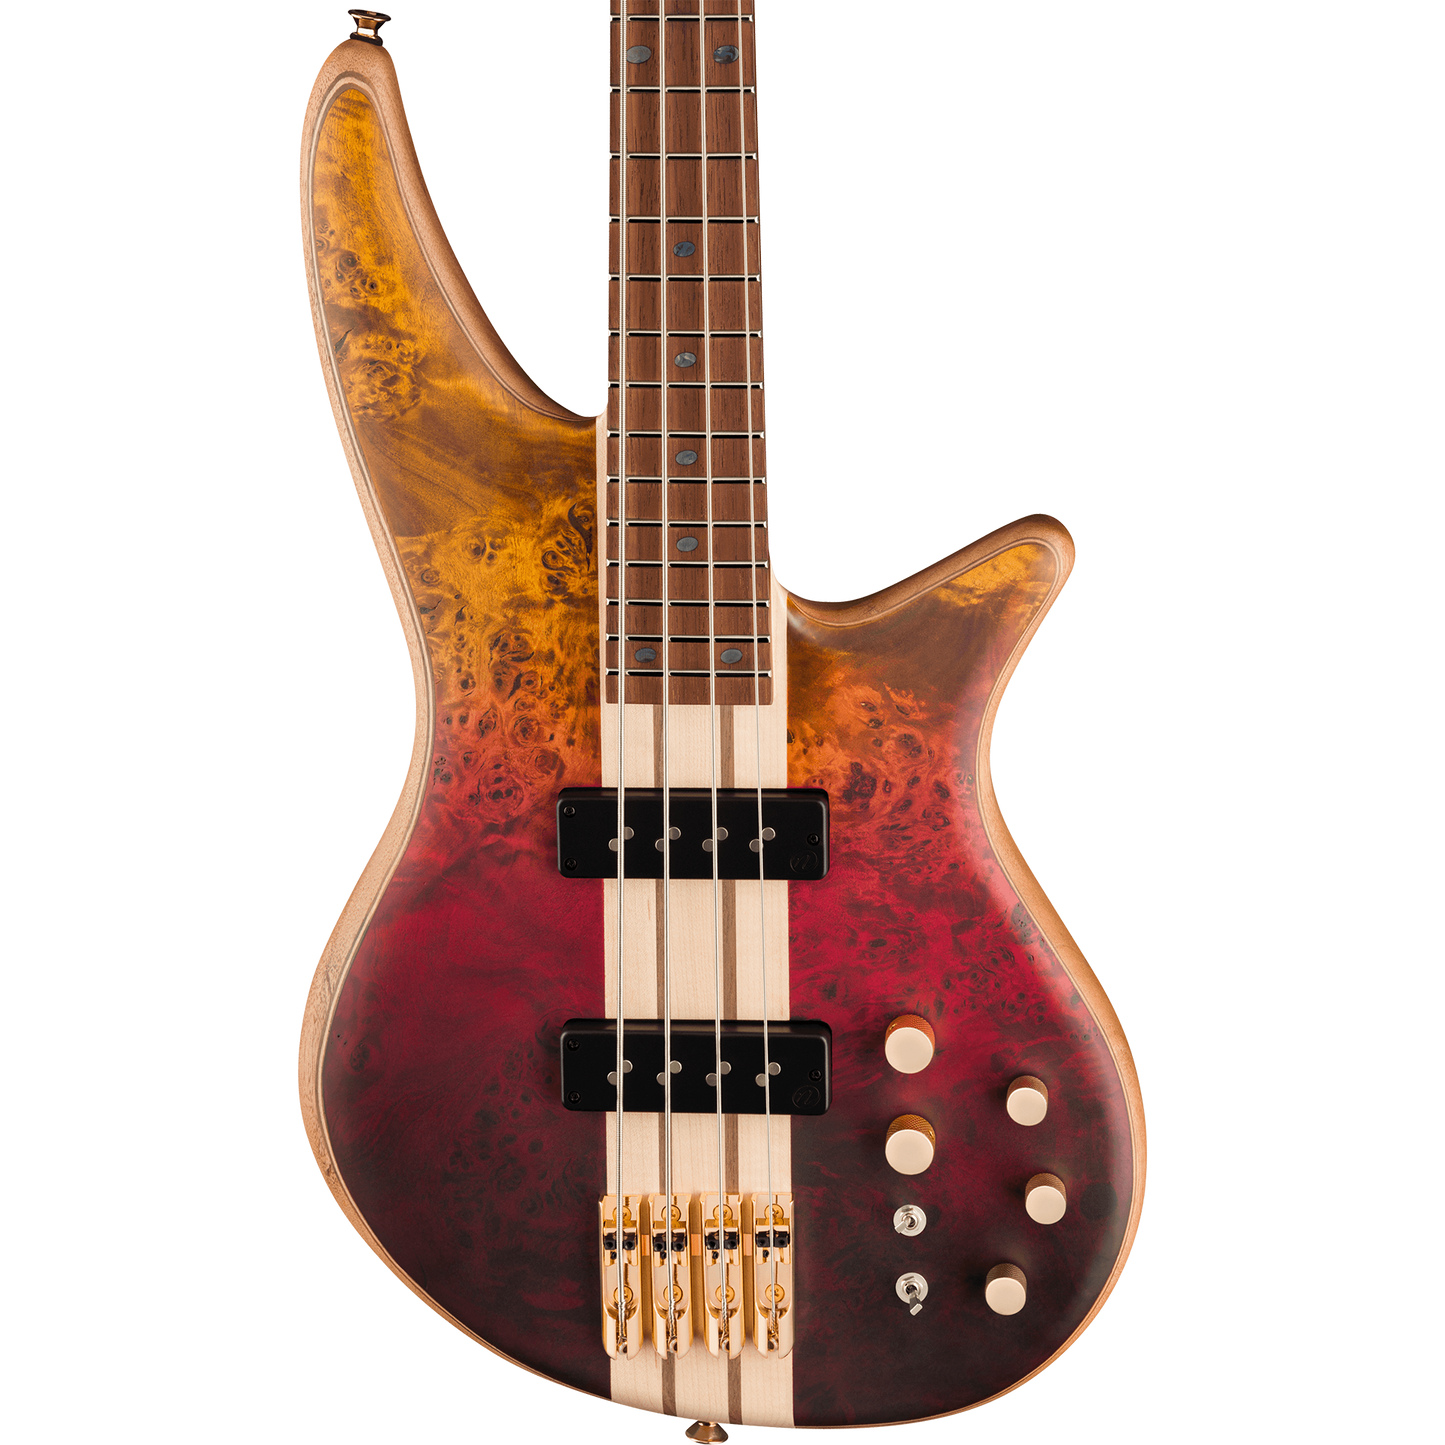 Jackson Pro Series Spectra Bass SBP IV Bass Guitar, Firestorm Fade